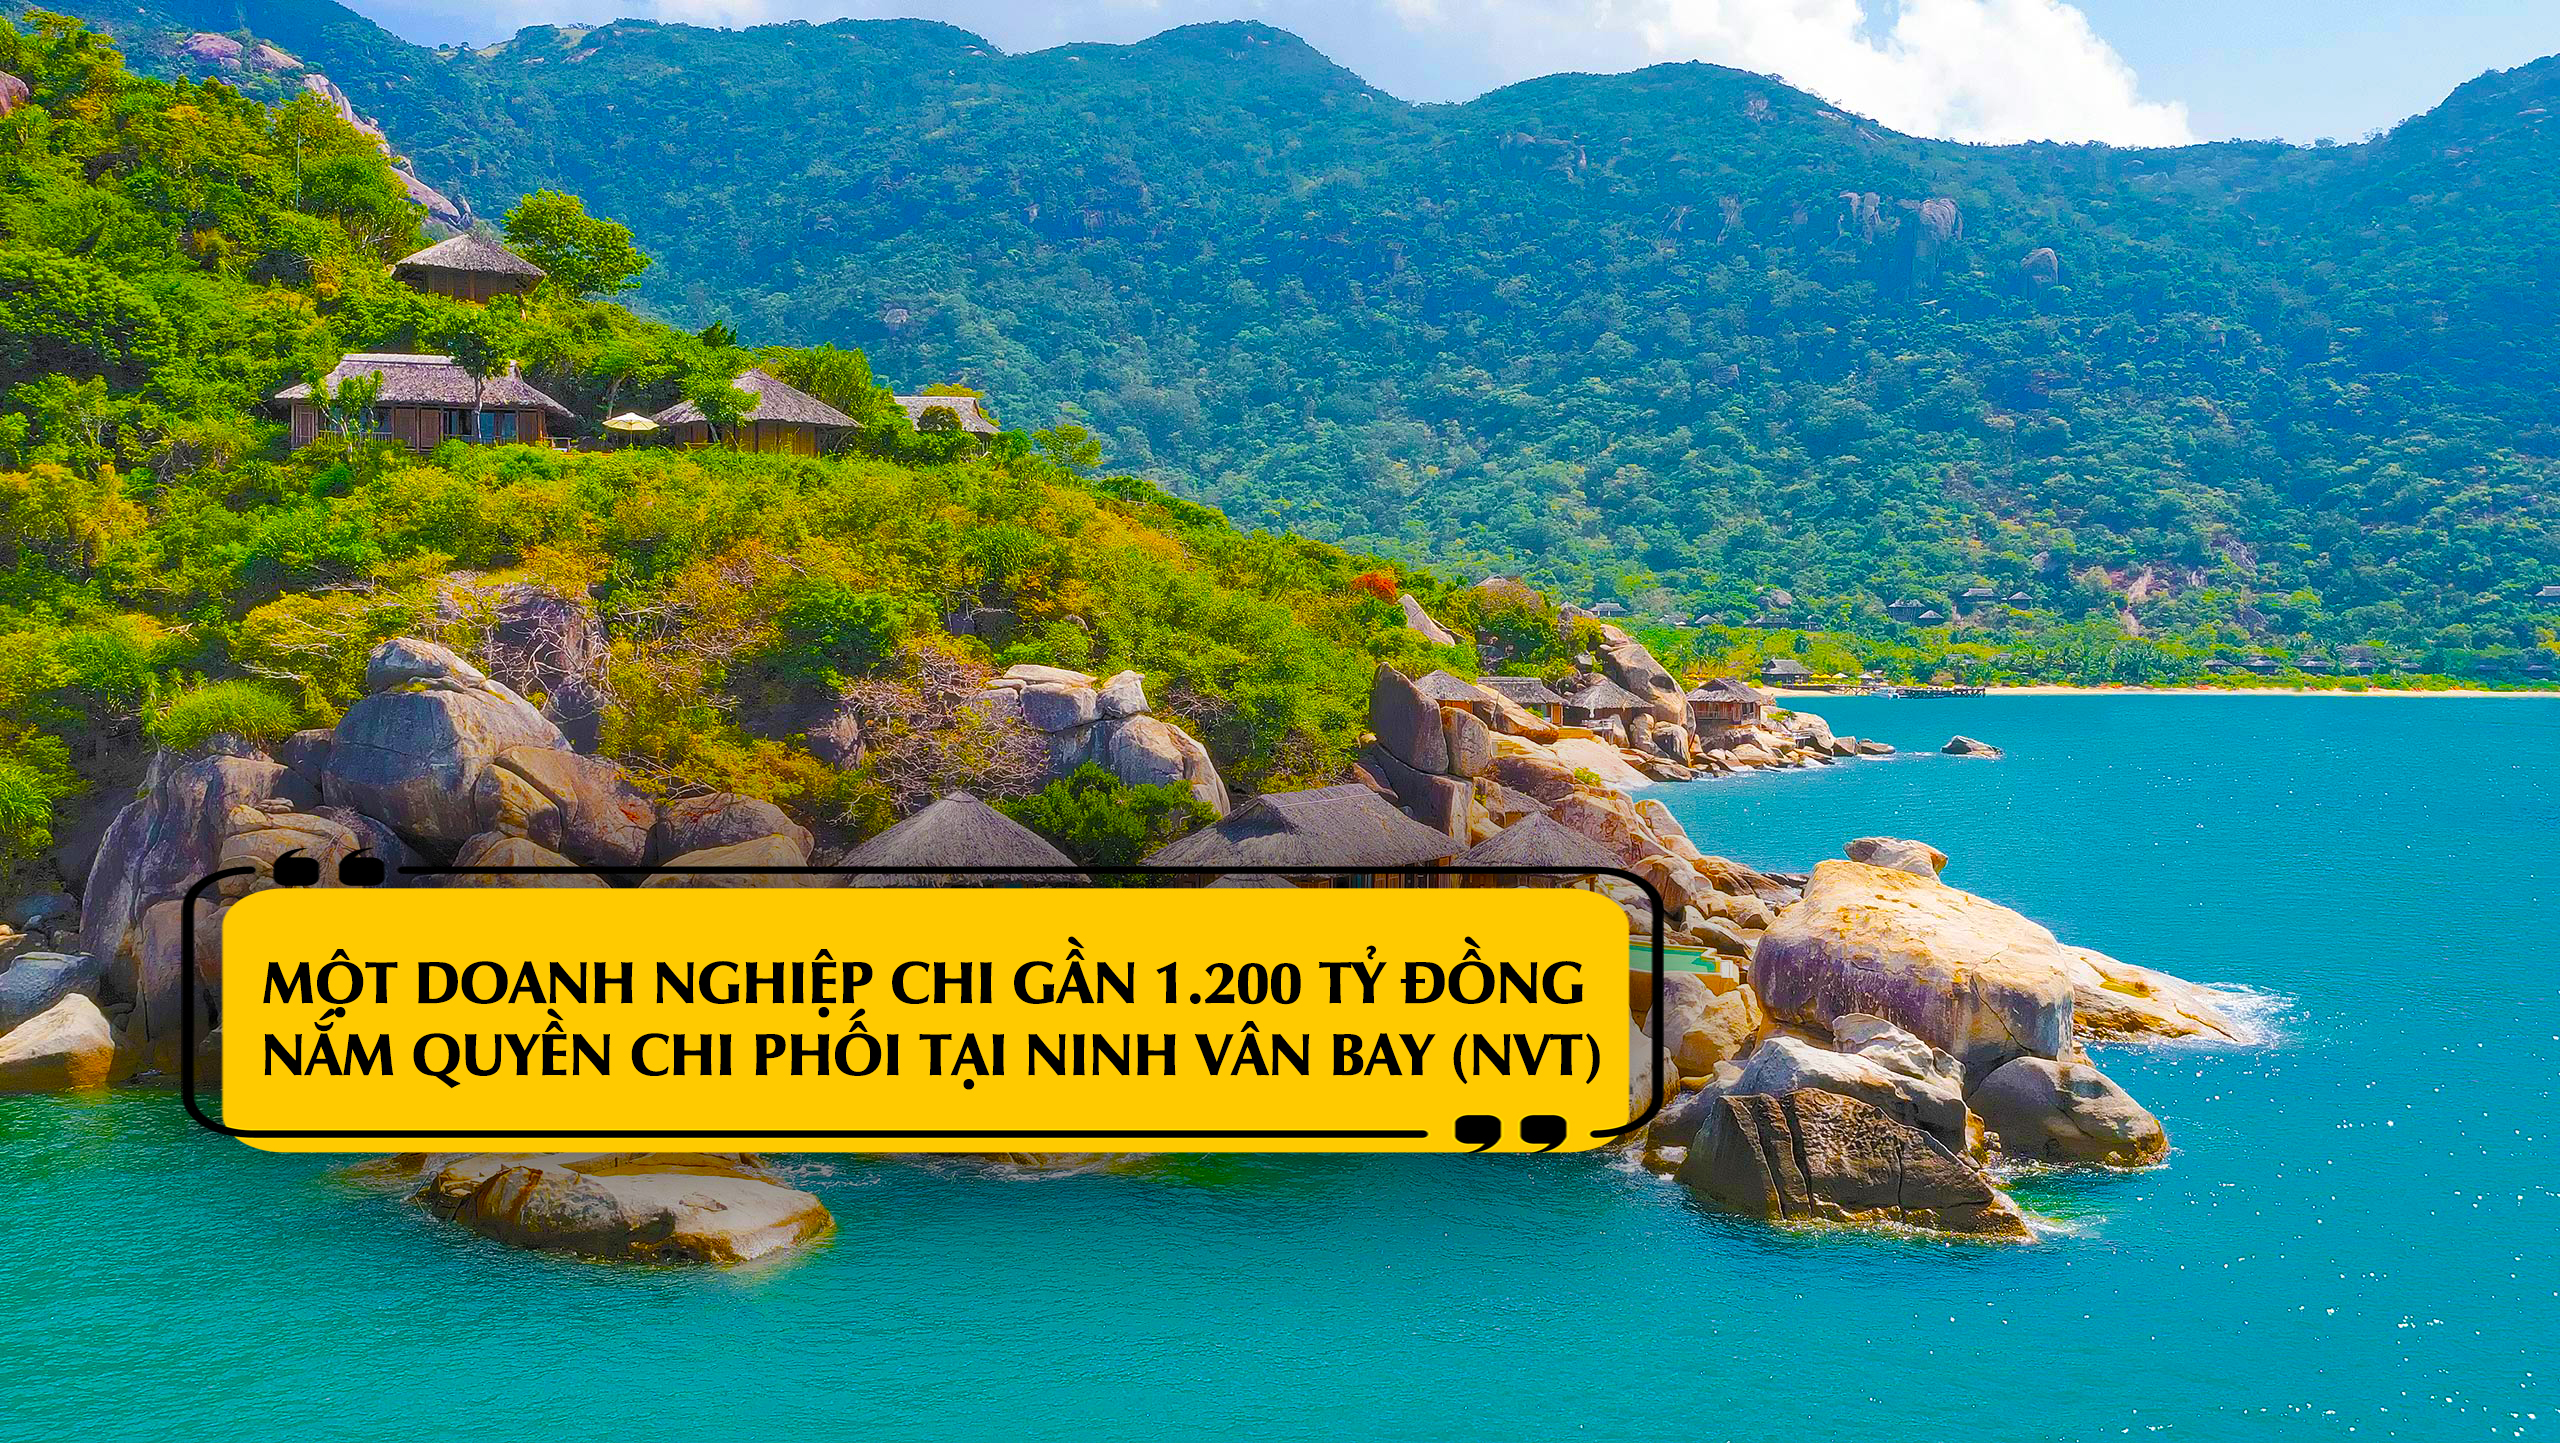 Một doanh nghiệp chi gần 1.200 tỷ đồng nắm quyền chi phối tại Ninh Vân Bay (NVT)